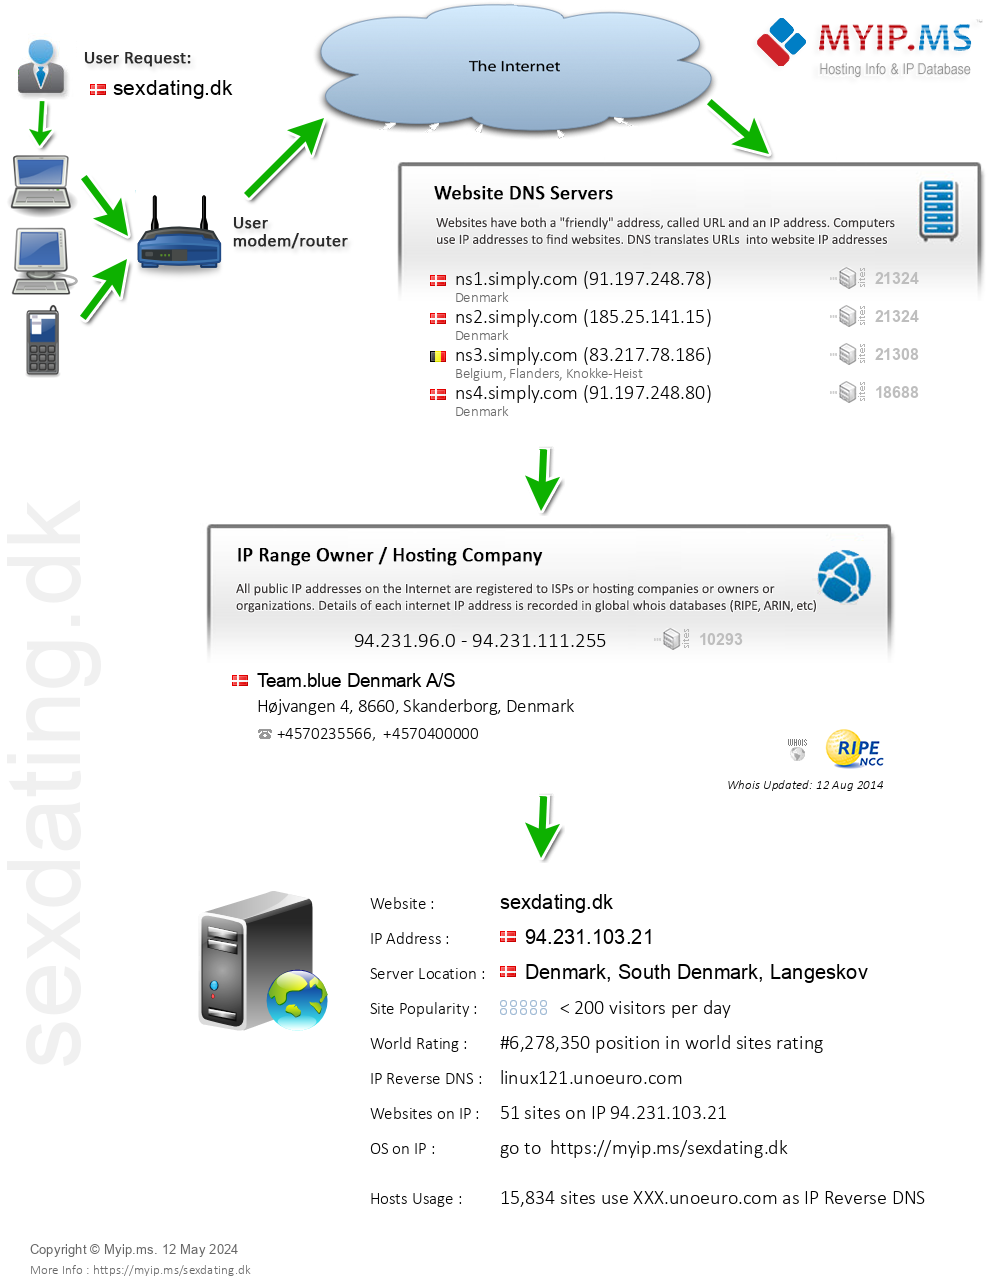 Sexdating.dk - Website Hosting Visual IP Diagram